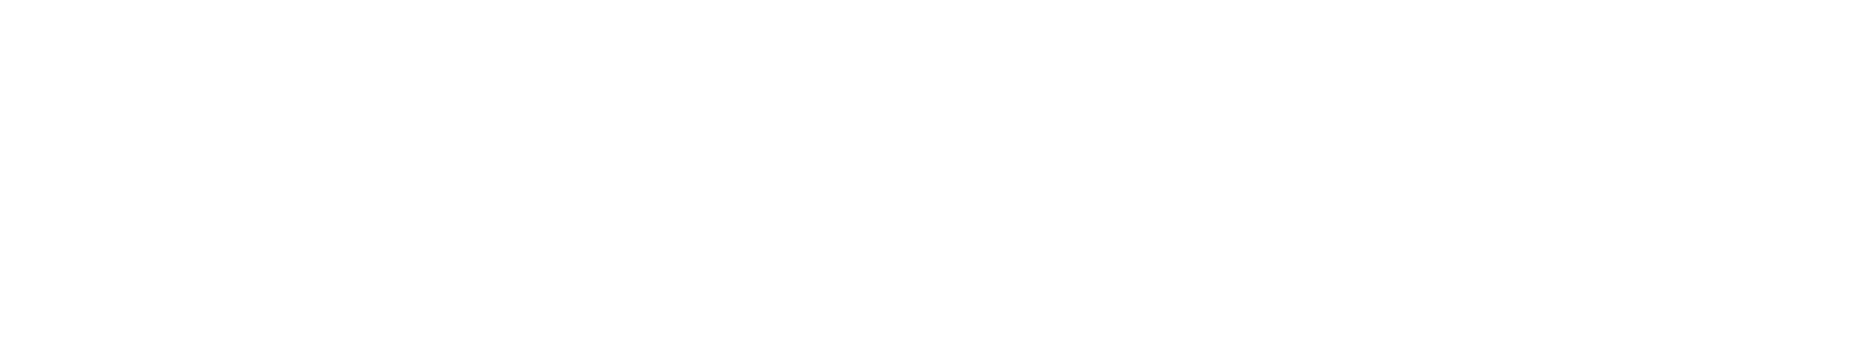 kapkaresort-logo